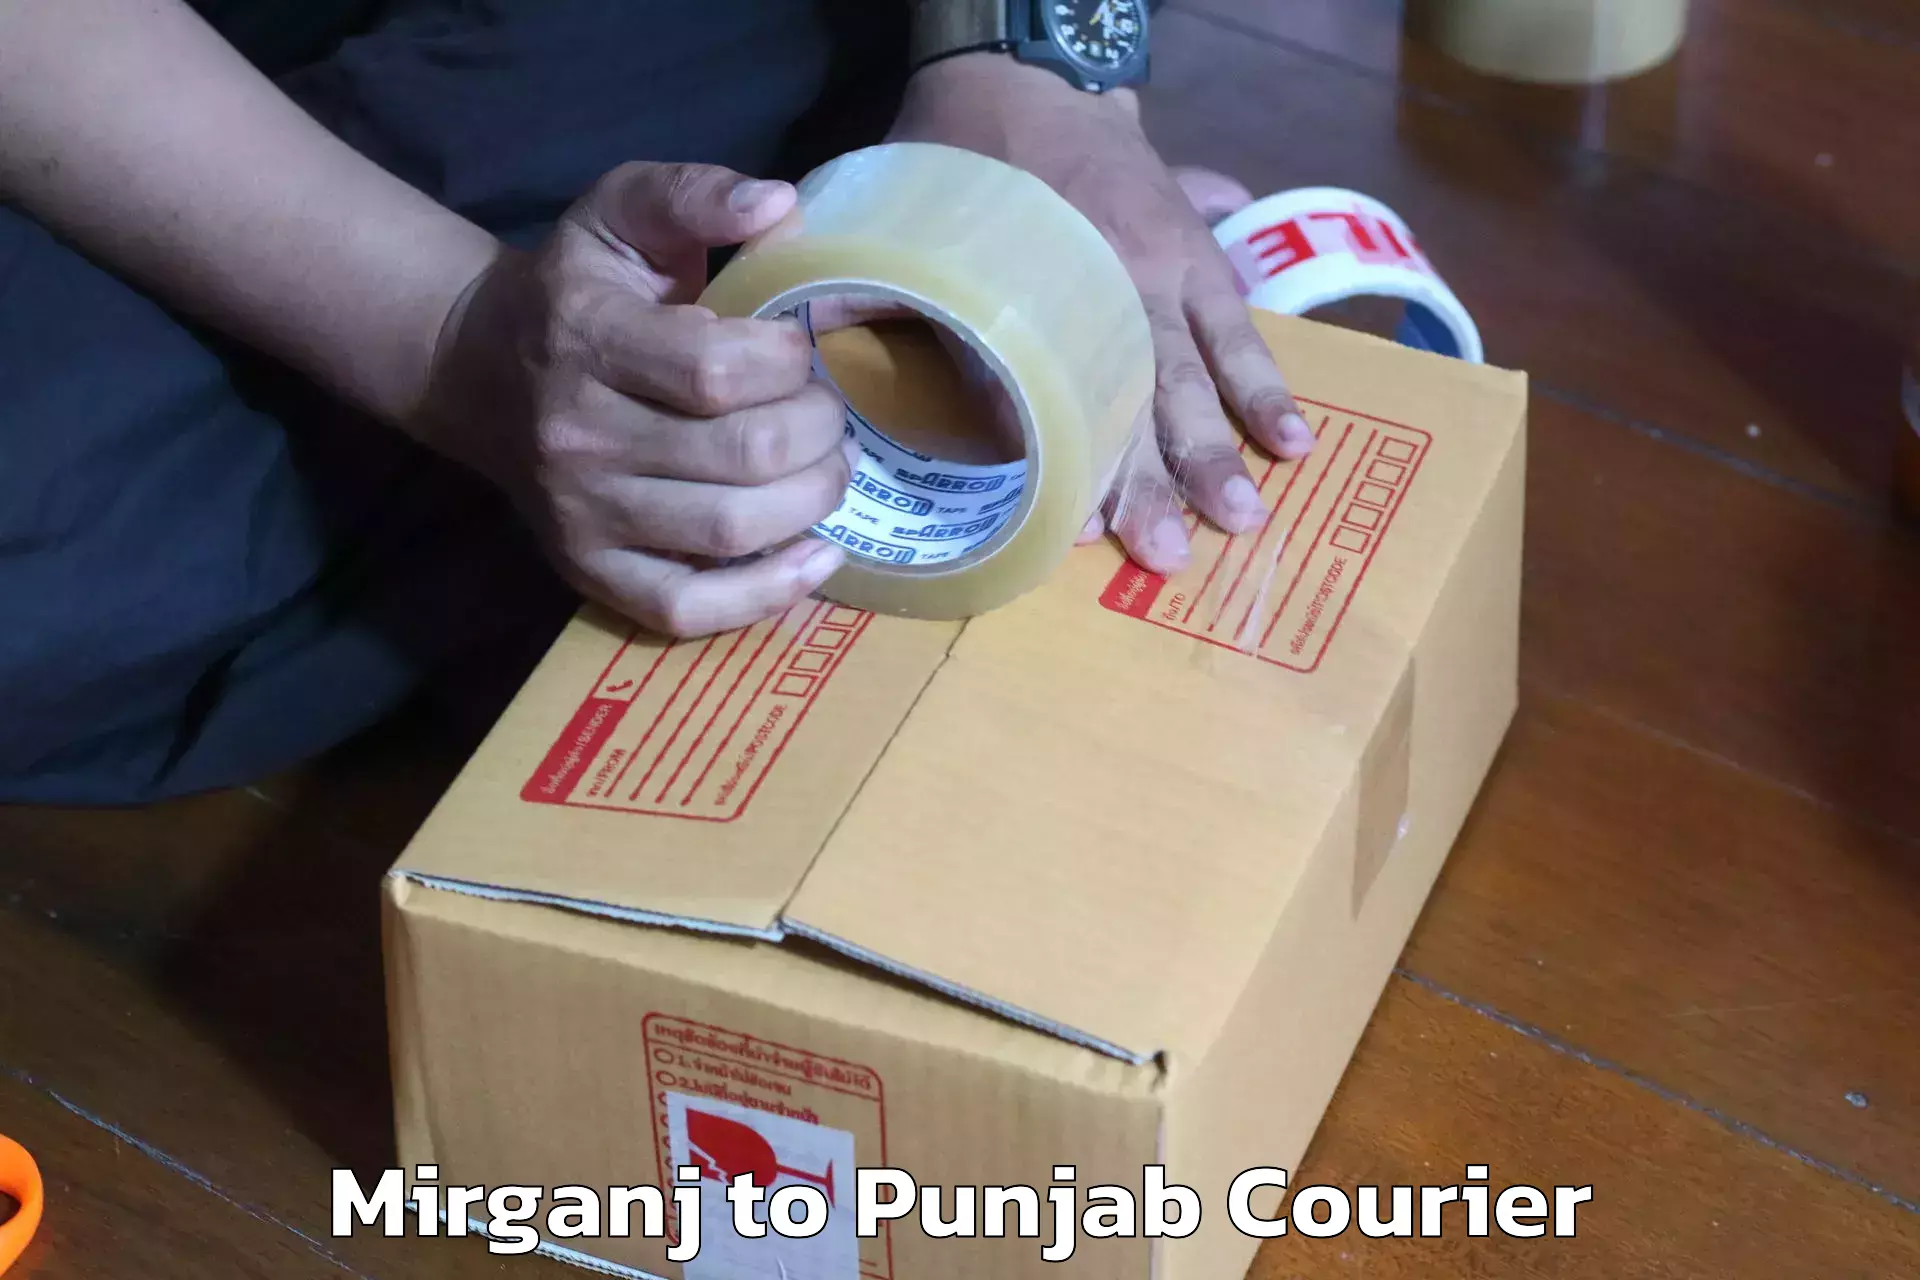 Furniture transport solutions Mirganj to Punjab